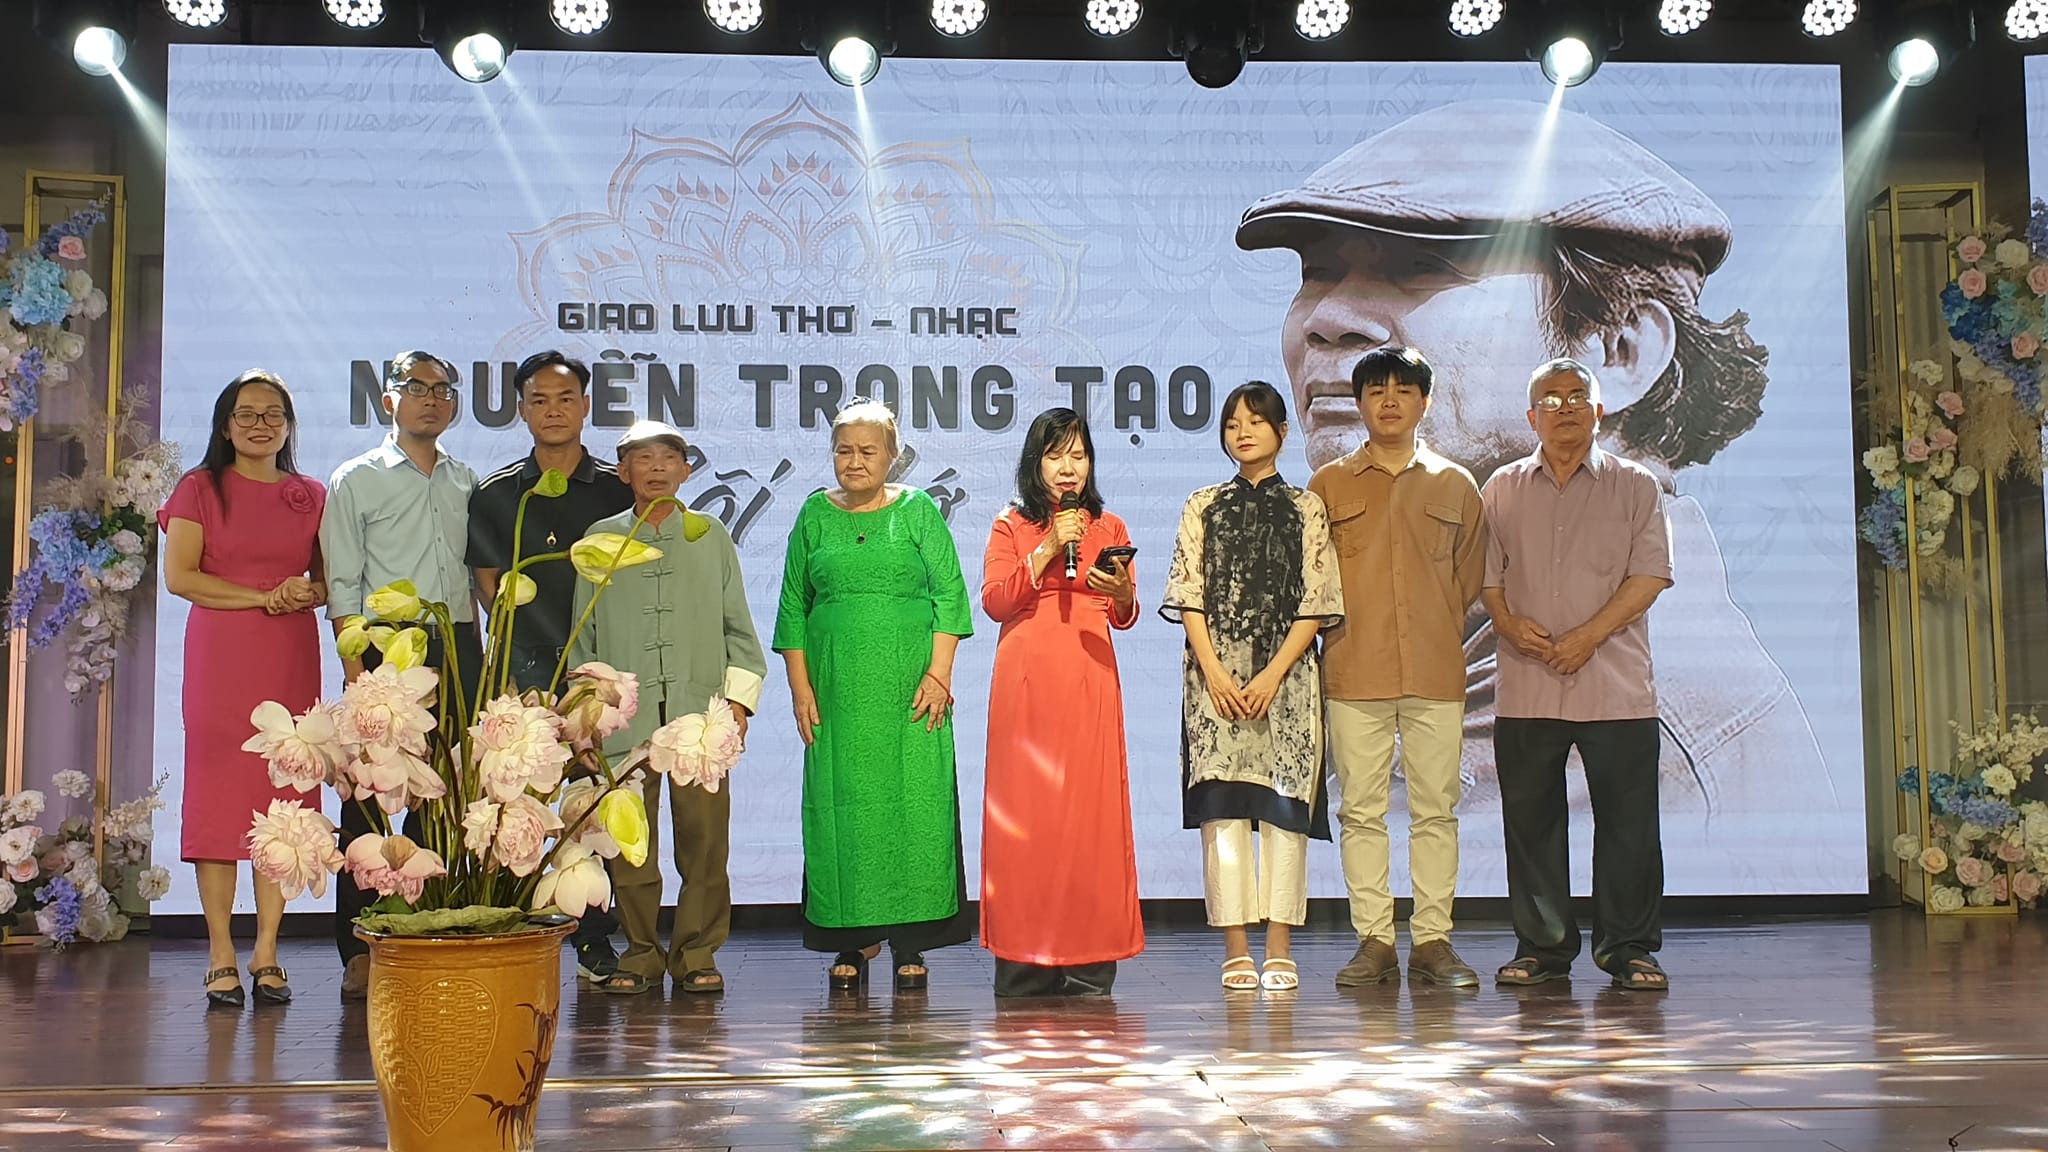 Nghẹn ngào khi “gặp lại” nhà thơ - nhạc sĩ Nguyễn Trọng Tạo tại khu tưởng niệm ở quê nhà- Ảnh 5.